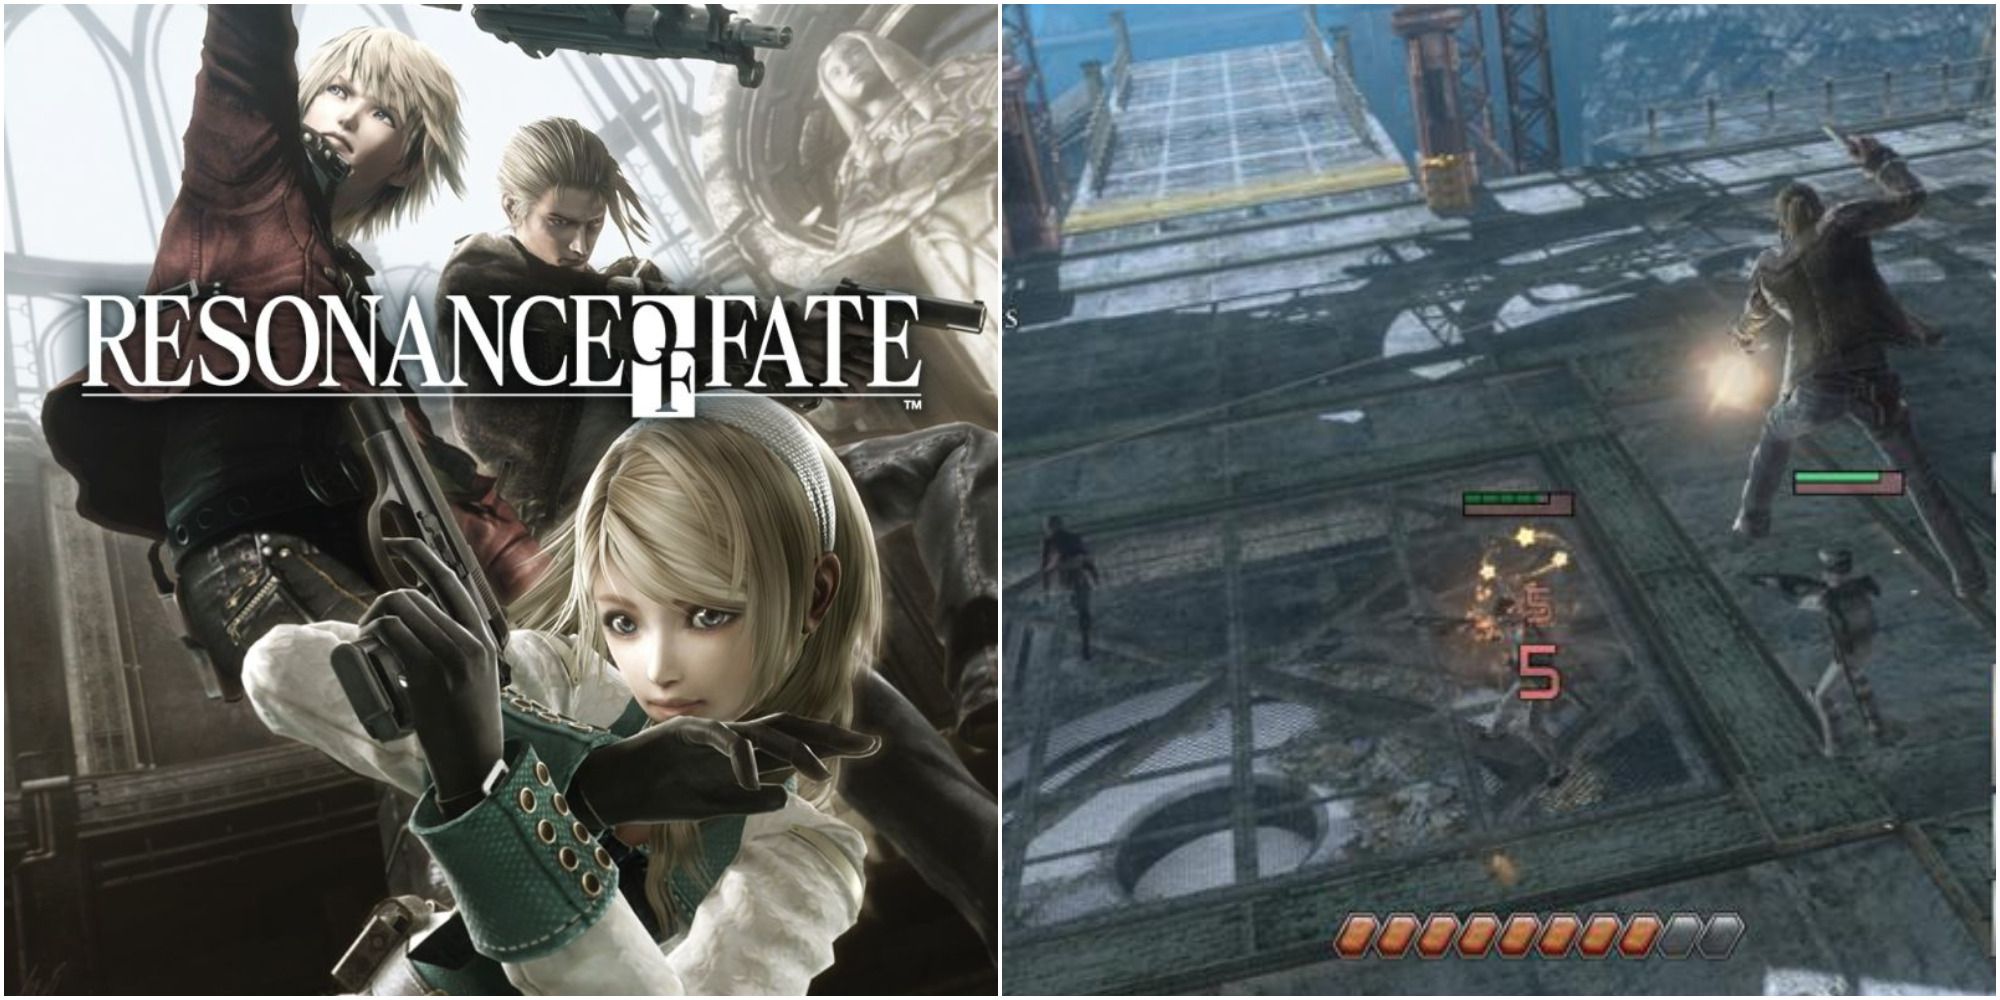 resonance of fate cover art & gameplay